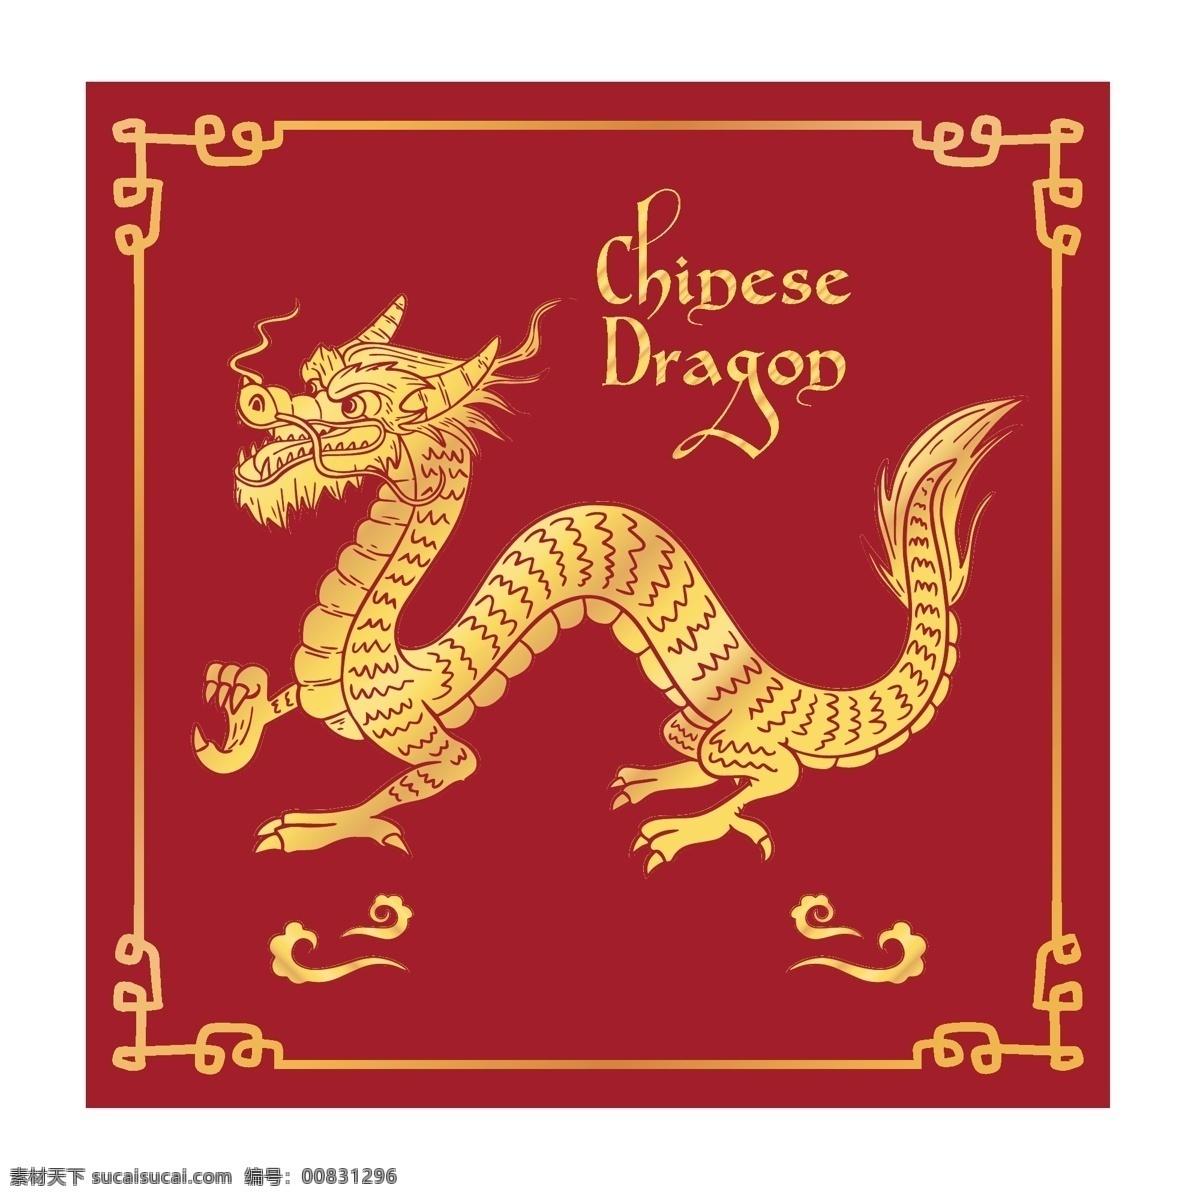 中国龙 龙 神龙 西方龙 手绘神龙 龙图腾 飞龙 生物世界